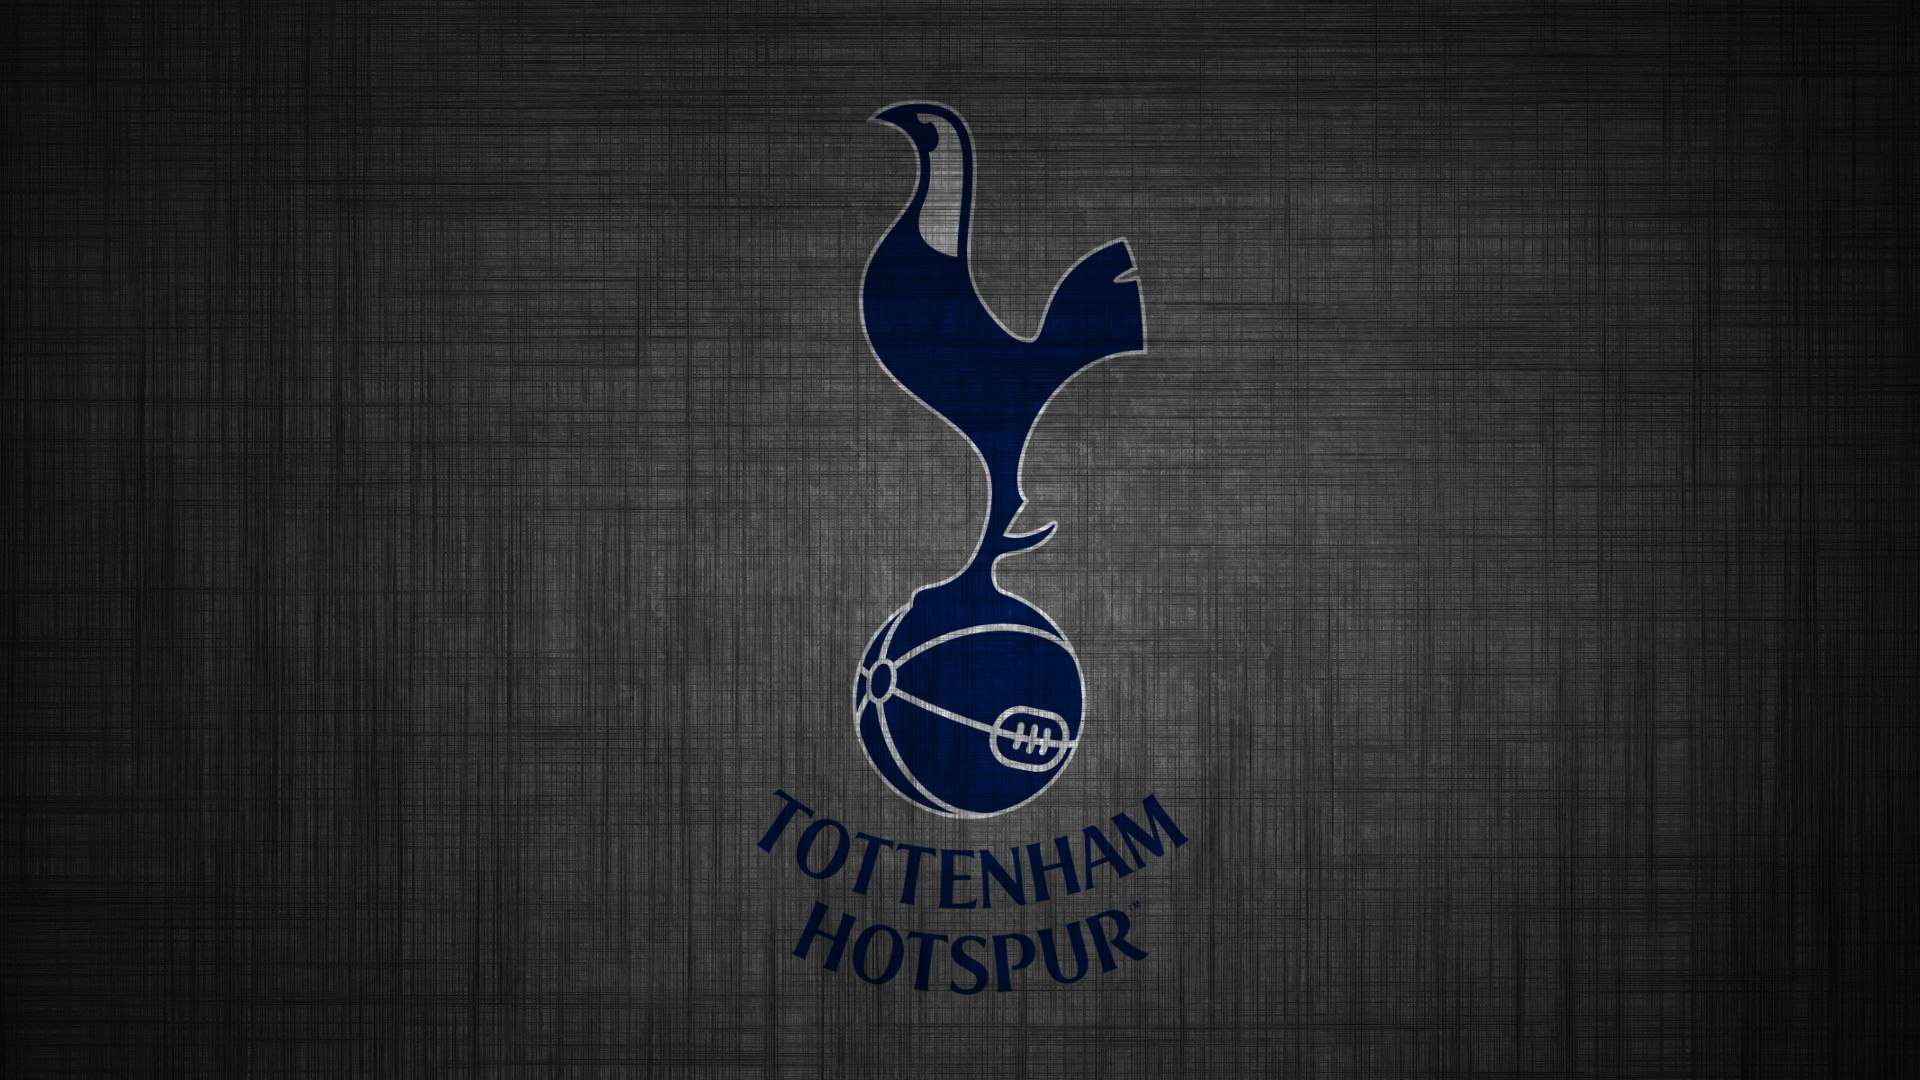 Tottenham Hotspur HD Image